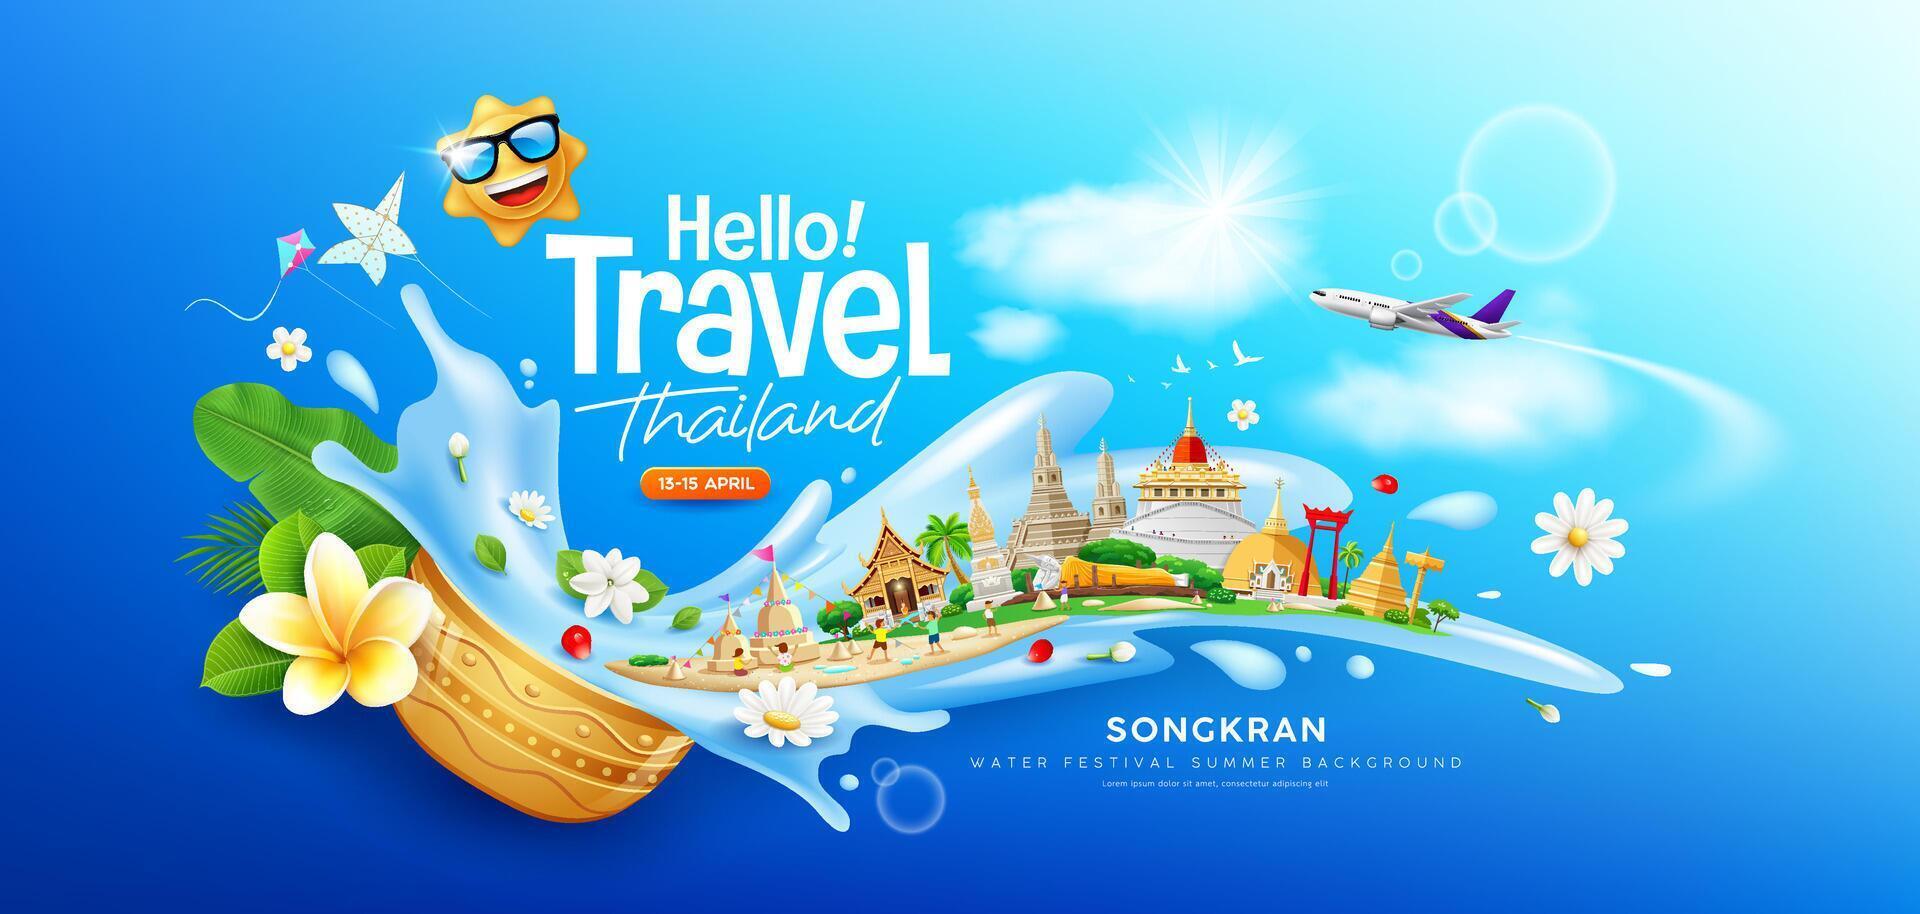 songkran vatten festival resa thailand, blommor i en vatten skål vatten stänk, thailand turism arkitektur, baner design på moln och himmel blå bakgrund, eps 10 vektor illustration